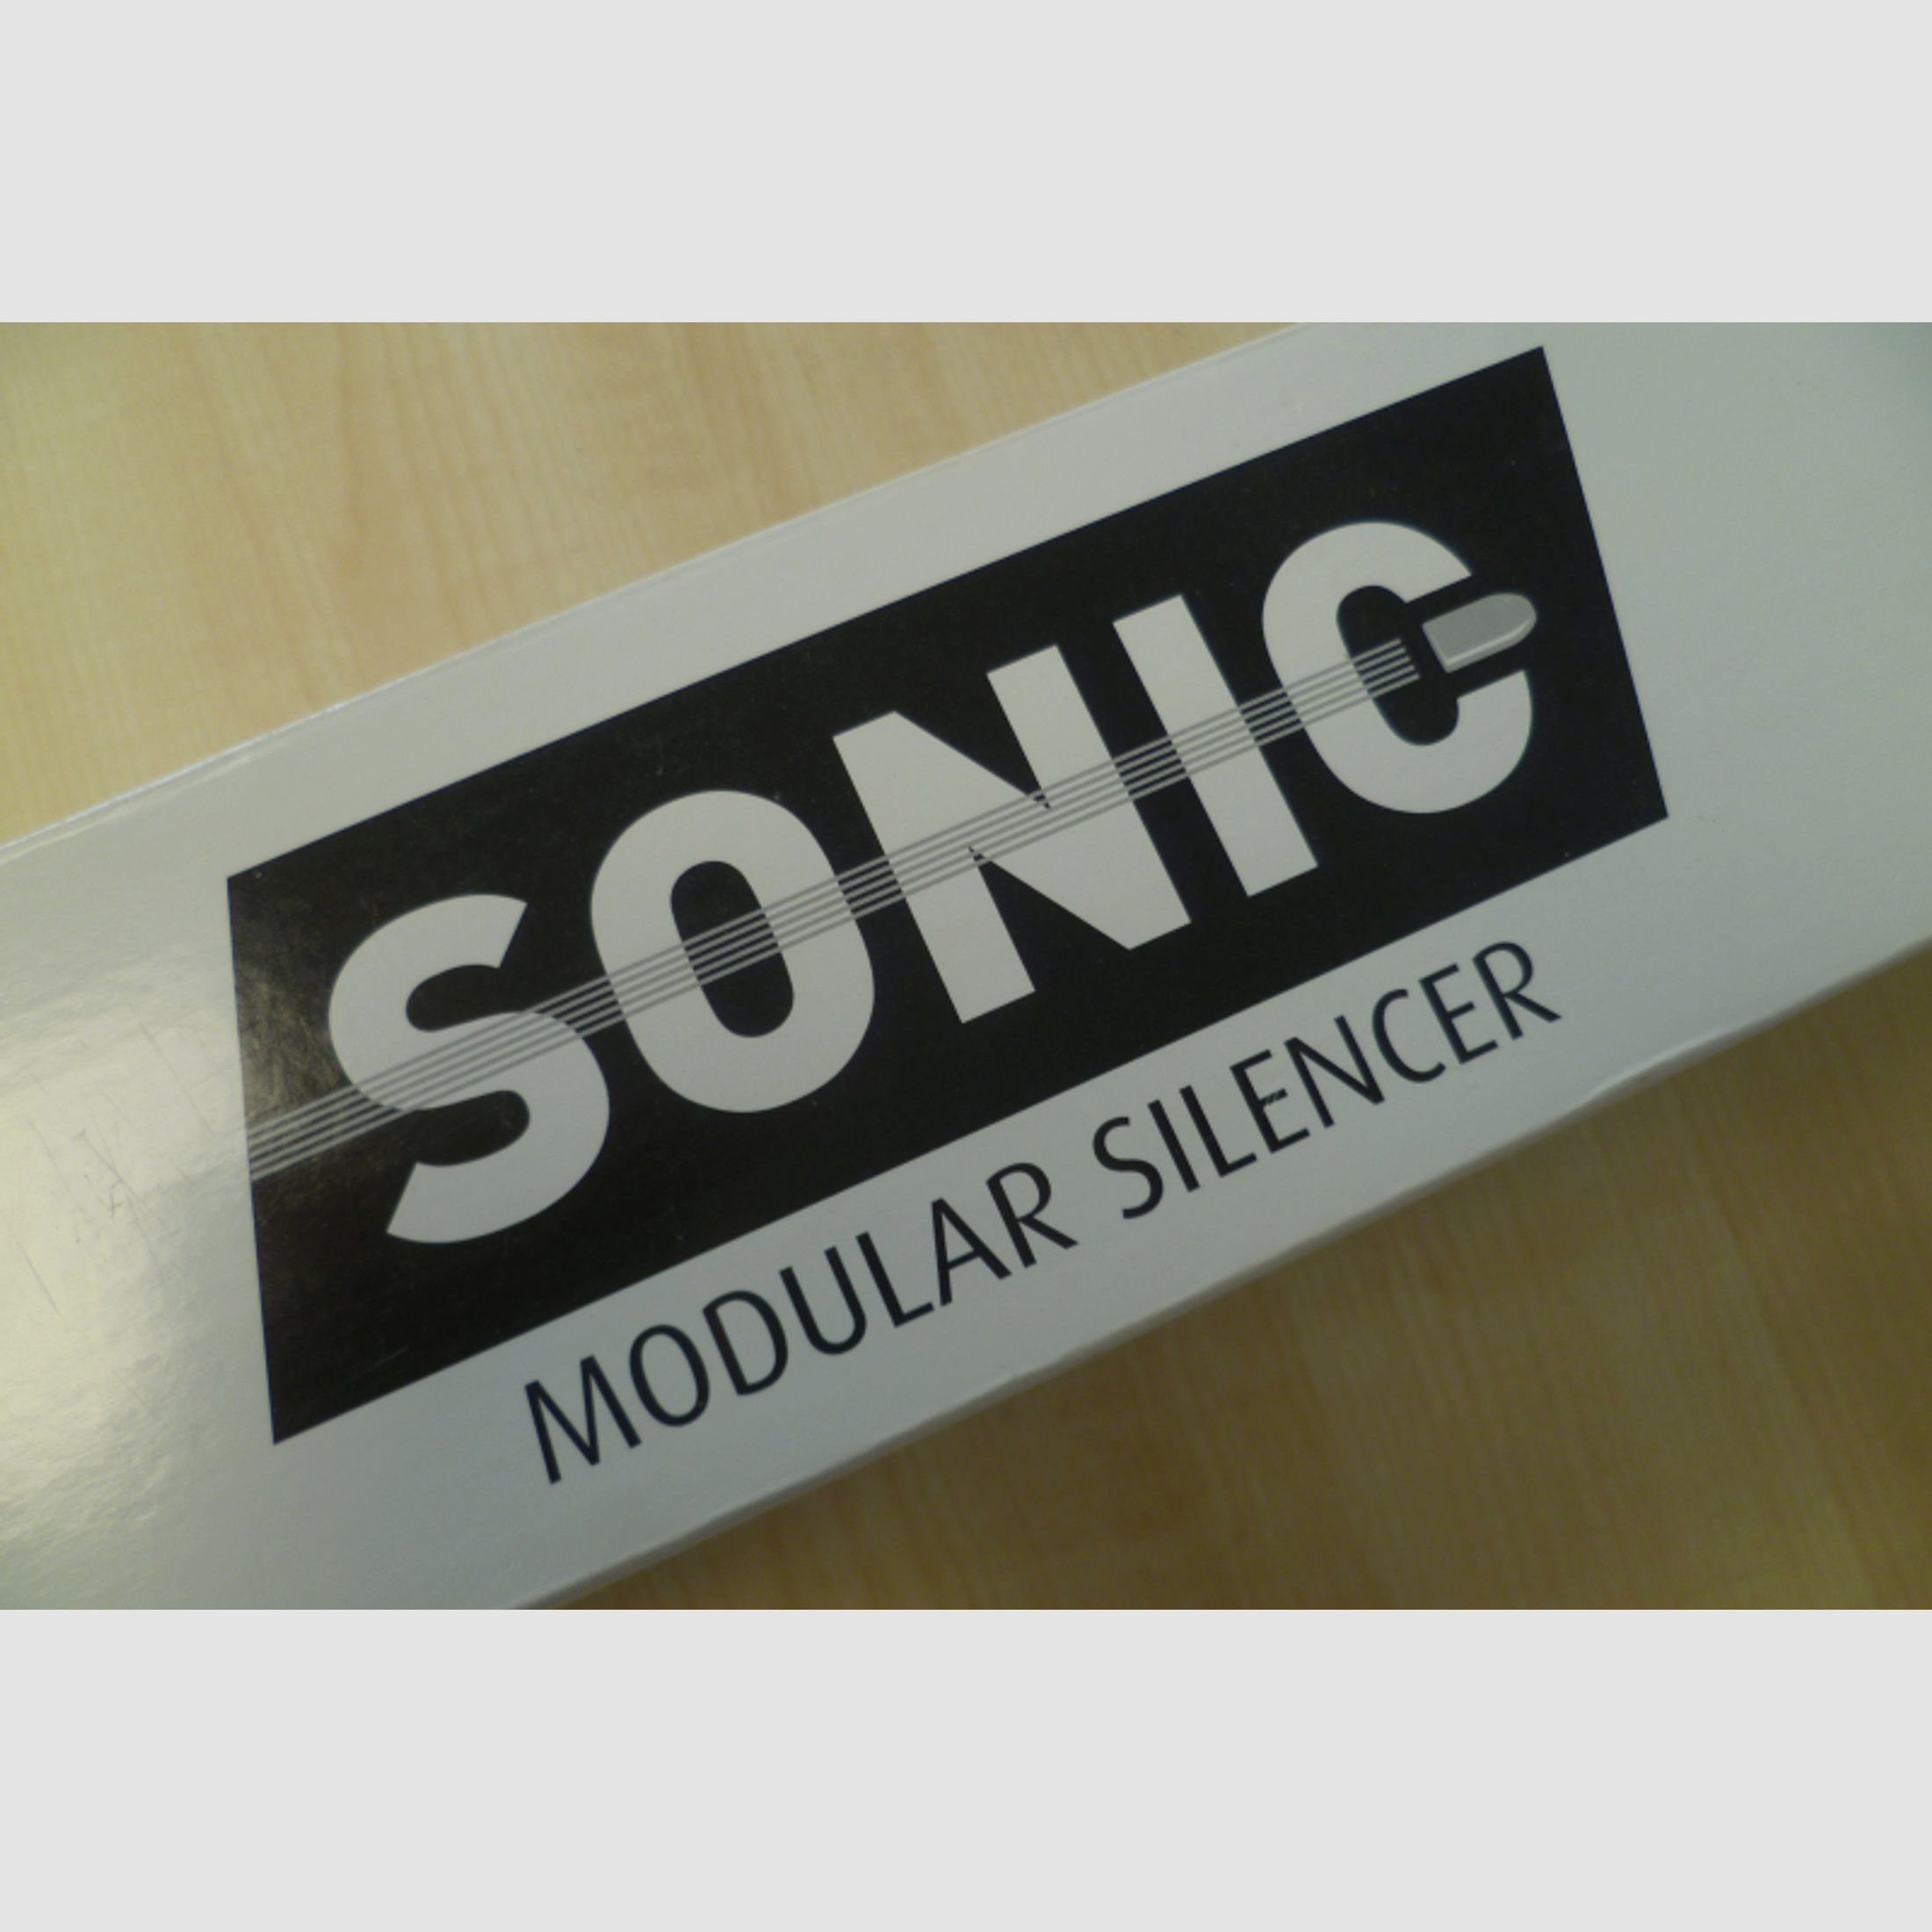 Schalldämpfer Nielsen Sonic Modular Silencer 1/2 x 20" Cal. 6mm